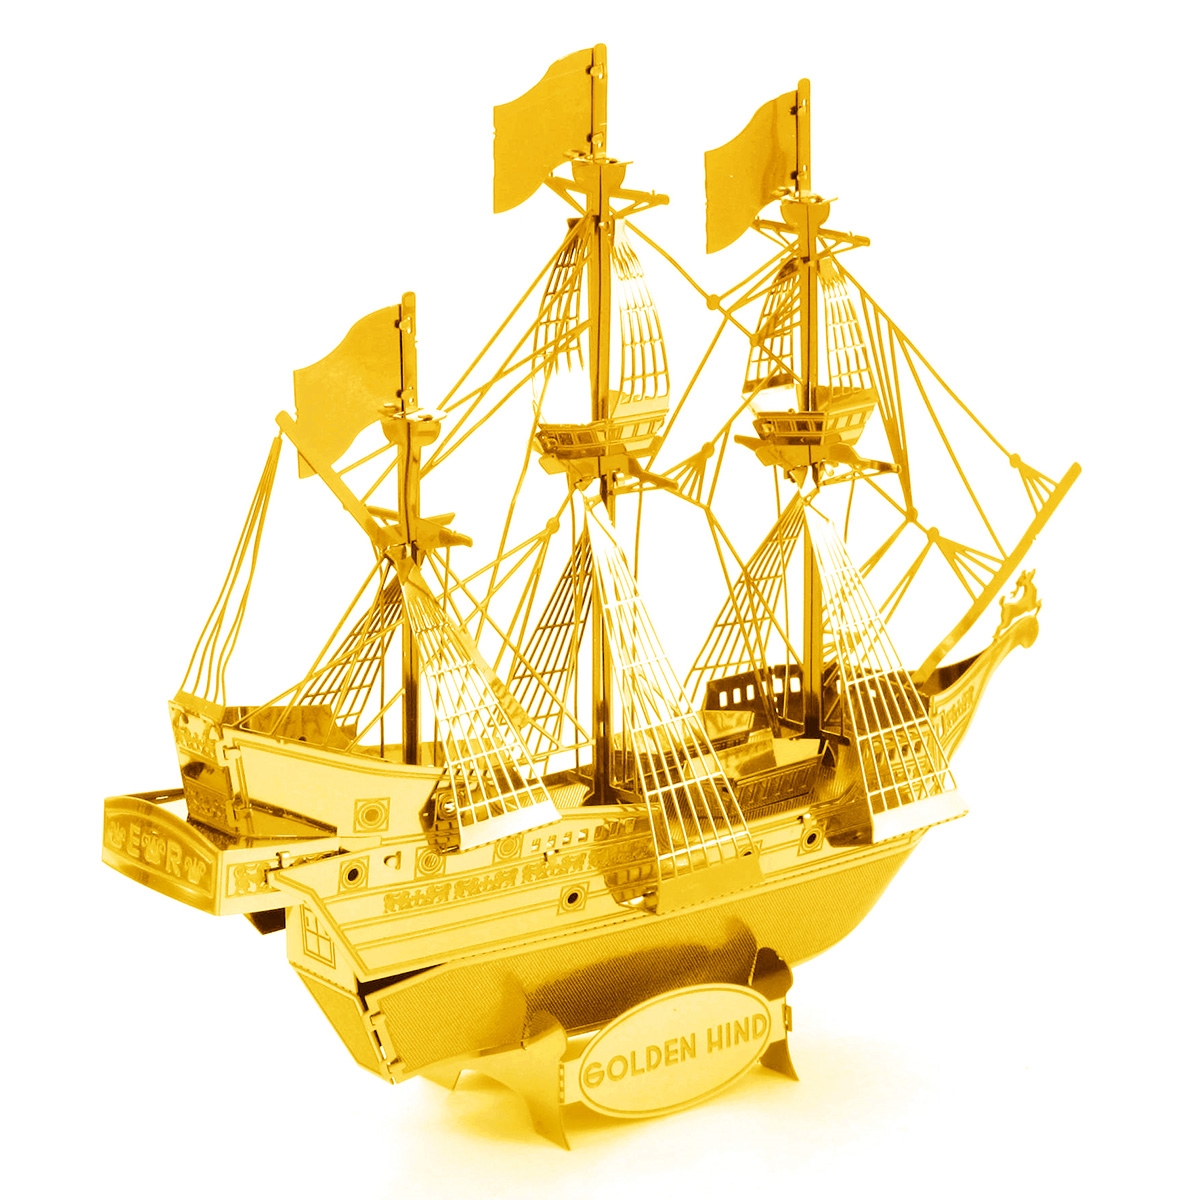 Найден корабль с золотом. Золотой корабль. Корабль с золотом. Золотой парусник. Ranger корабль золотой модель.